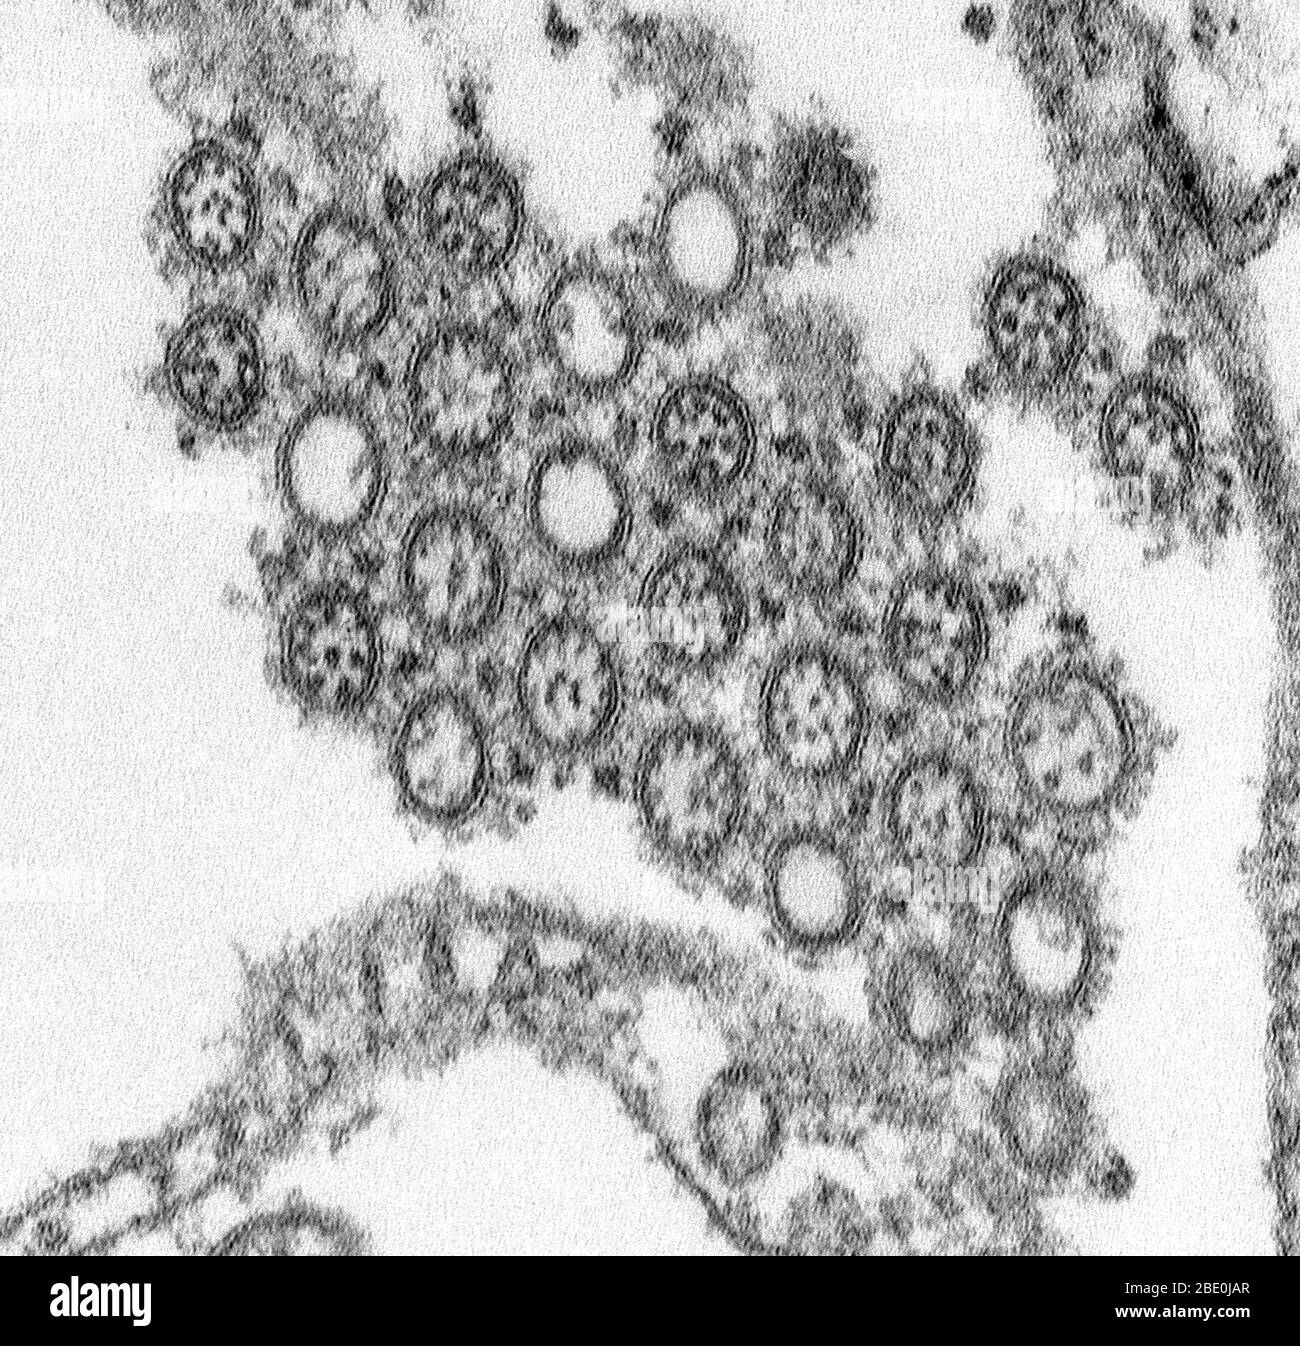 Micrografía de electrones de transmisión (TEM) que representa el número de viriones de un aislamiento H1N1 de la gripe. El nuevo H1N1 (conocido como "gripe porcina" al principio) es un nuevo virus de la gripe que causa enfermedades en las personas. Este nuevo virus fue detectado por primera vez en personas en los Estados Unidos en abril de 2009. Este virus se está propagando de persona a persona en todo el mundo, probablemente de la misma manera que los virus de influenza estacional regulares se propagan. El 11 de junio de 2009, la Organización Mundial de la Salud (OMS) señaló que se estaba desarrollando una pandemia de nueva gripe H1N1. Este virus fue originalmente llamado 'gripe porcina' porque es un laboratorio Foto de stock